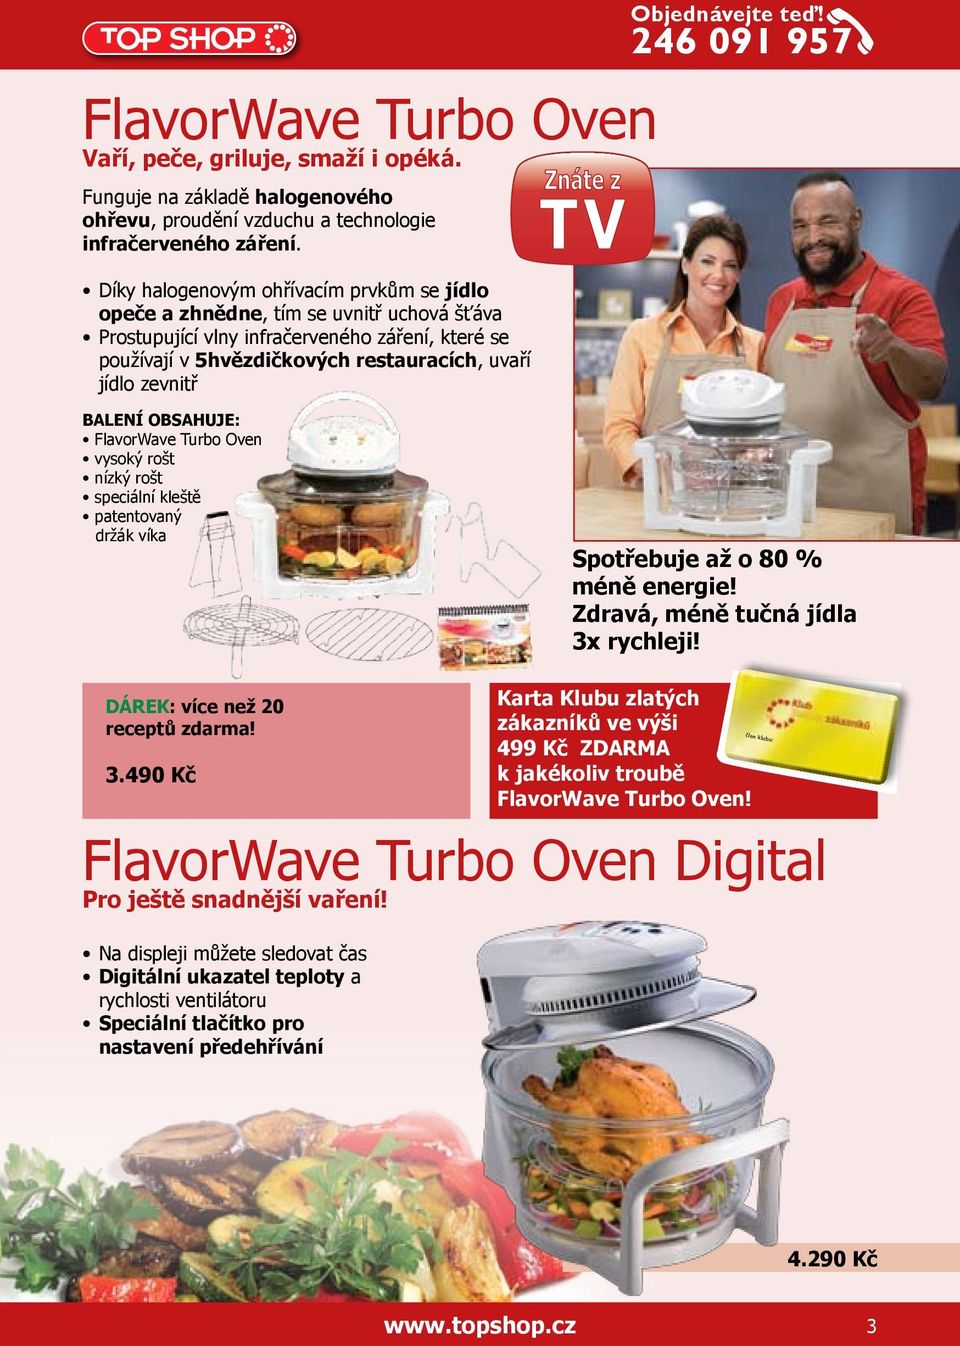 Objednávejte teď! FlavorWave Turbo Oven vysoký rošt nízký rošt speciální kleště patentovaný držák víka Spotřebuje až o 80 % méně energie! Zdravá, méně tučná jídla 3x rychleji!